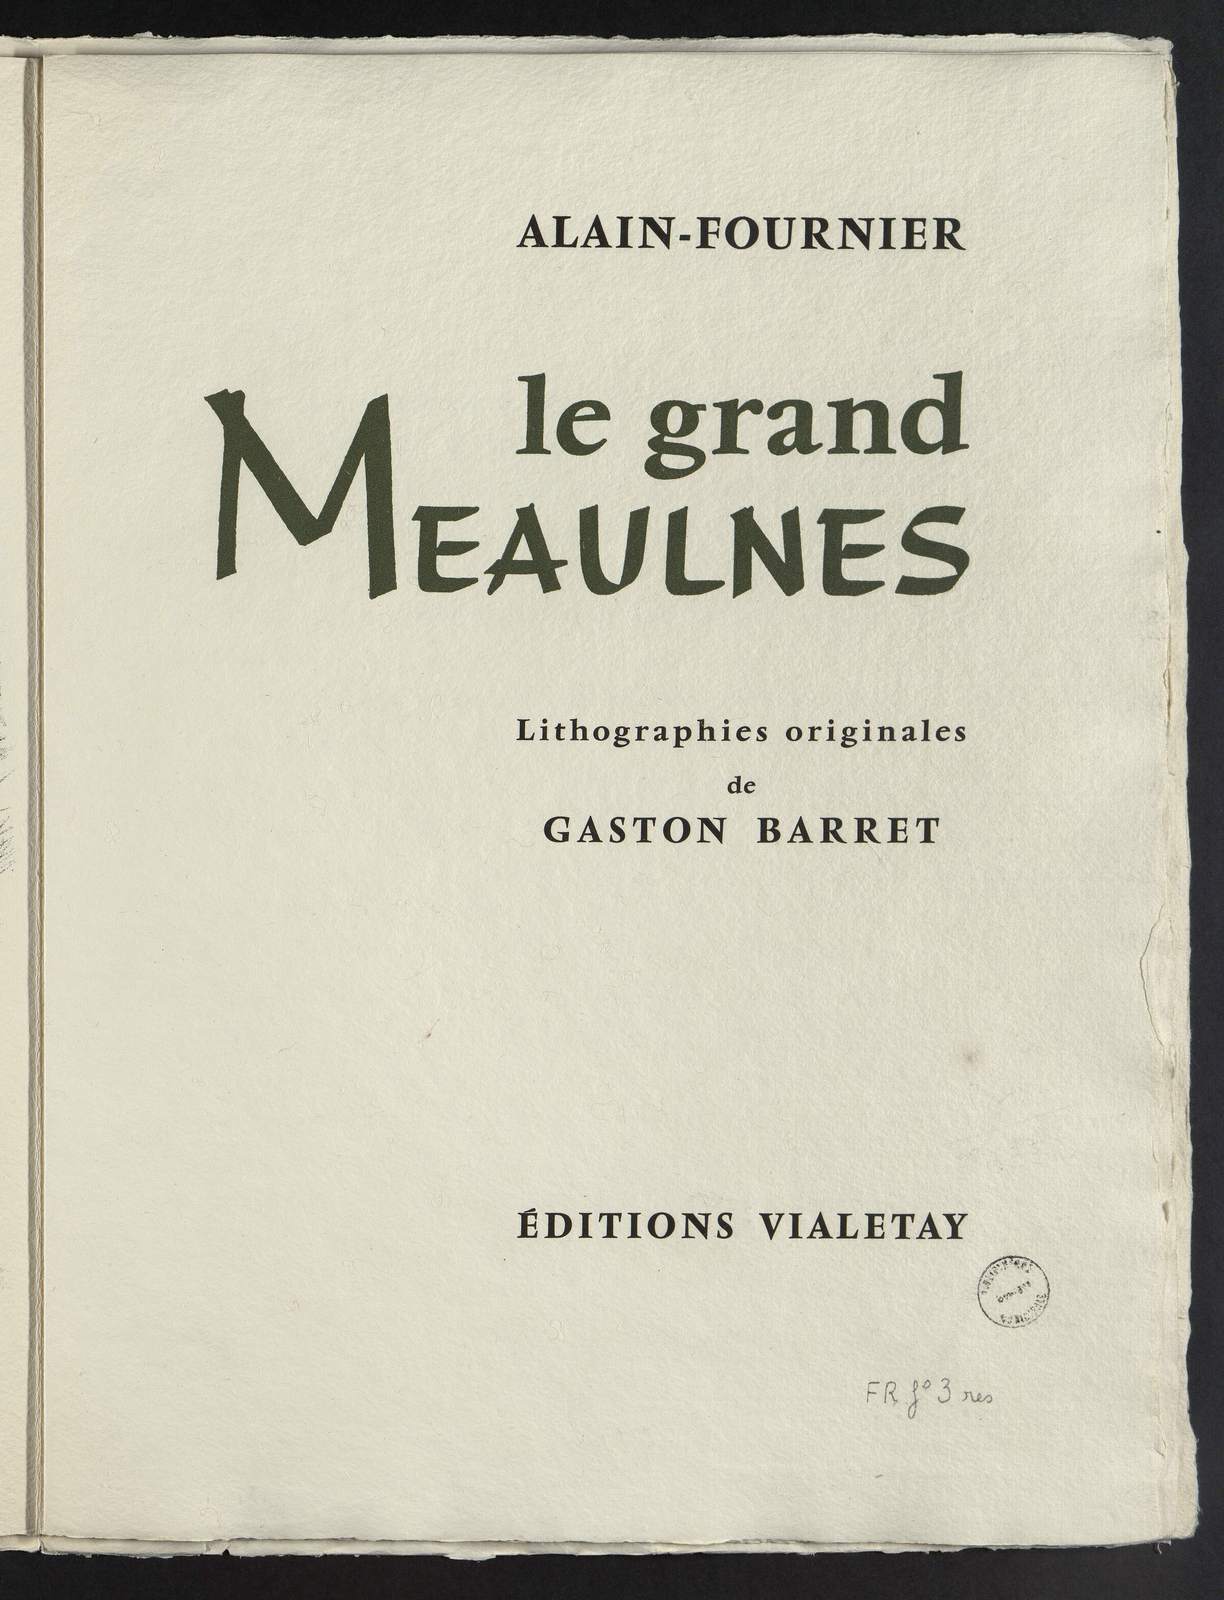 Le Grand Meaulnes, La maison de Frantz, illustré par Gaston Barret, Editions Viletay, 1965